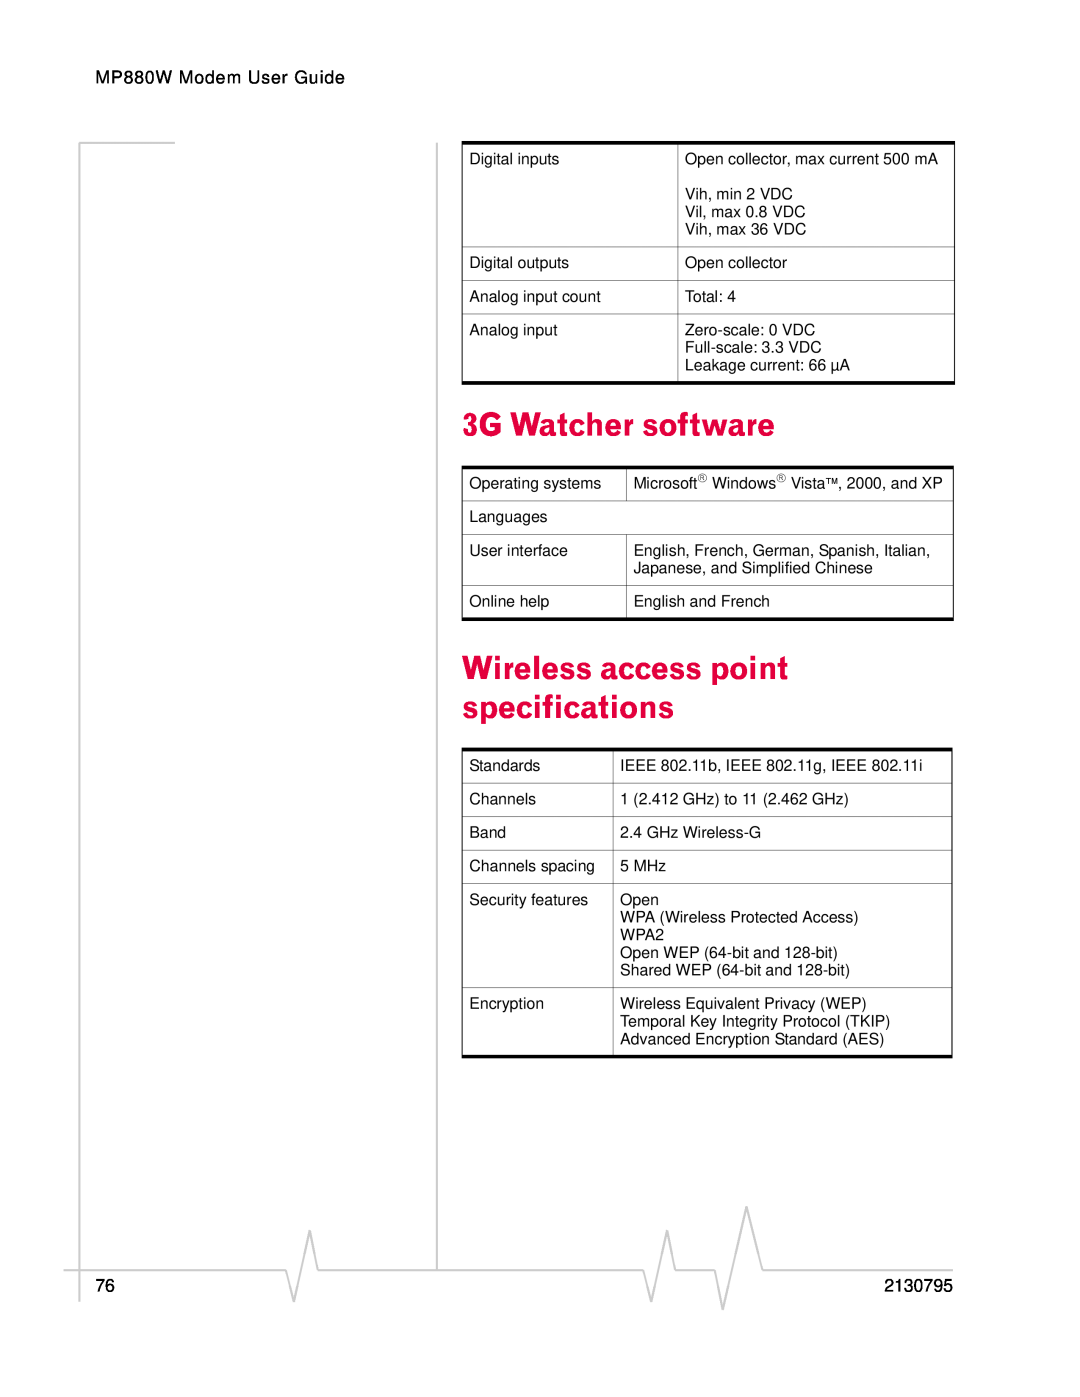 Sierra Wireless MP 880W manual Wireless access point specifications, 3G Watcher software, MP880W Modem User Guide, 2130795 